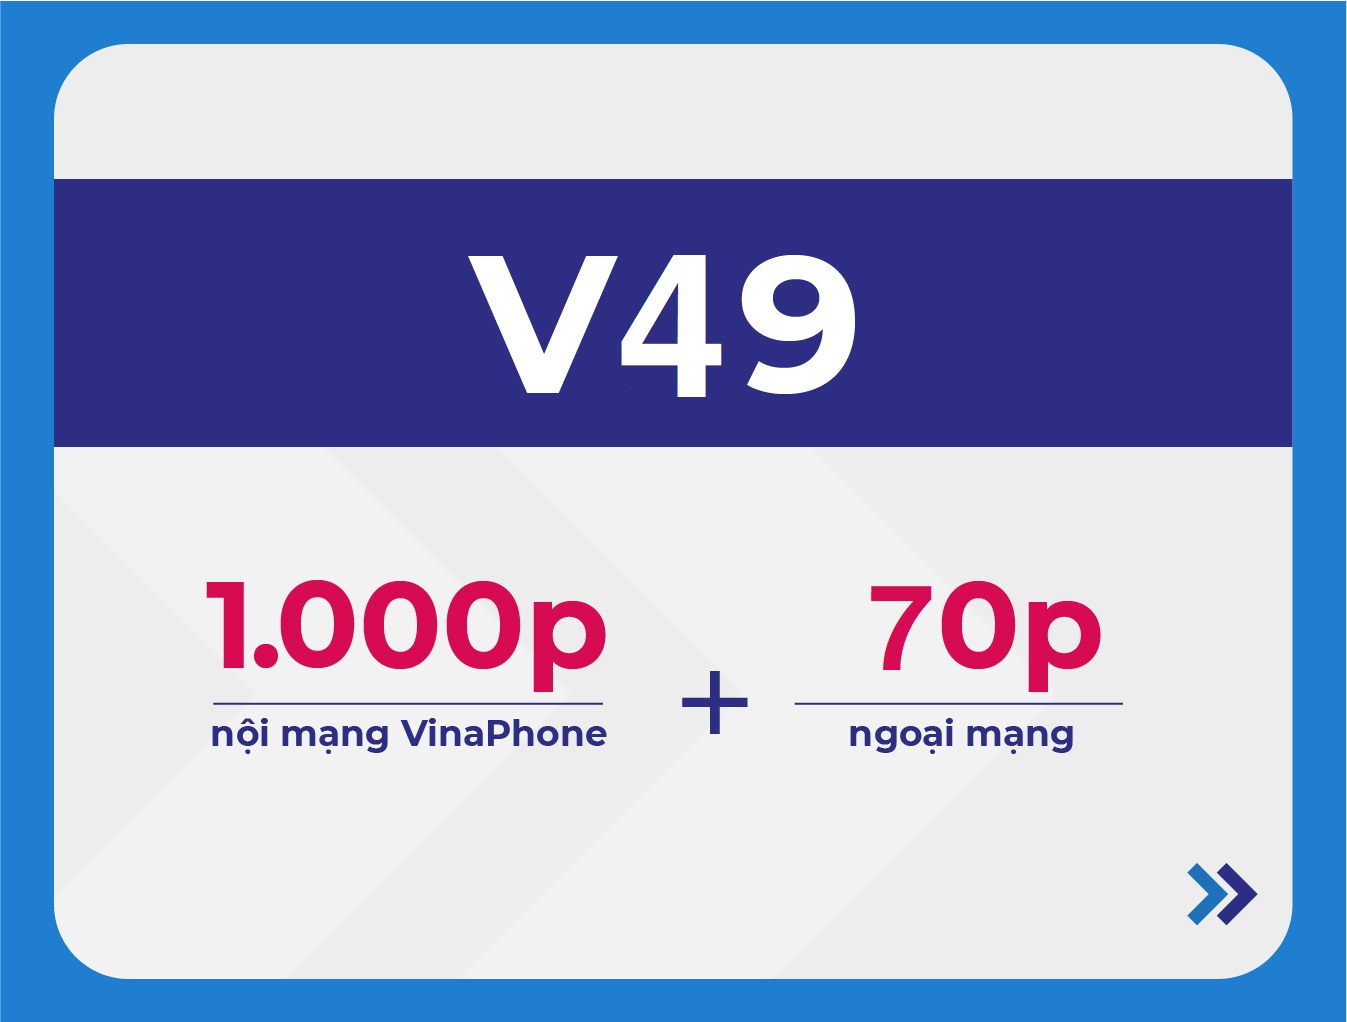 V49 VinaPhone - Gói cước ưu đãi gọi thoại của VinaPhone